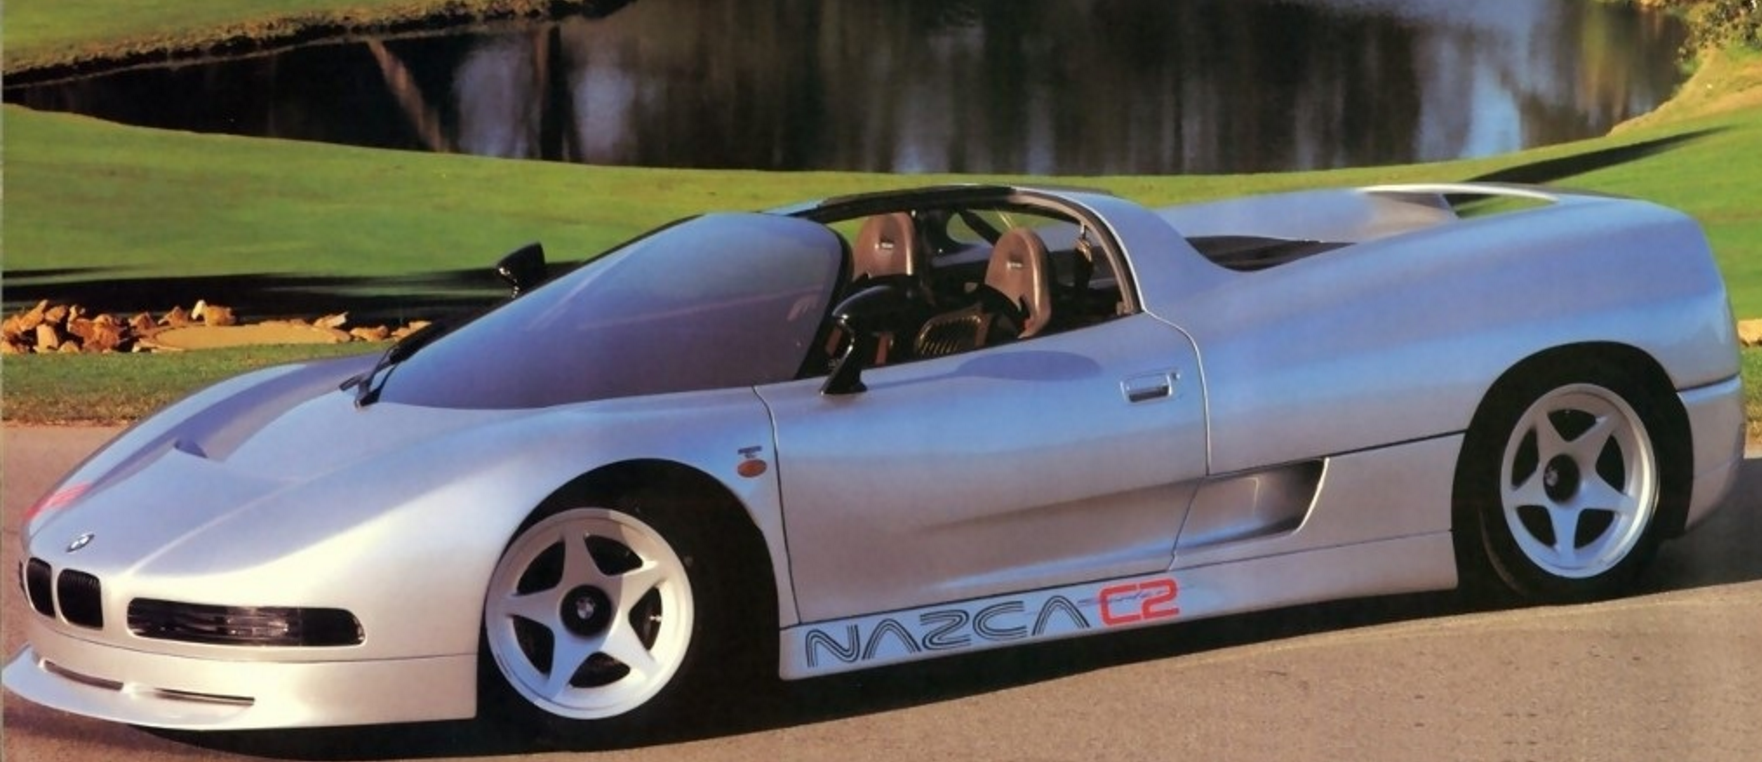 1993 BMW Nazca C2 Spider